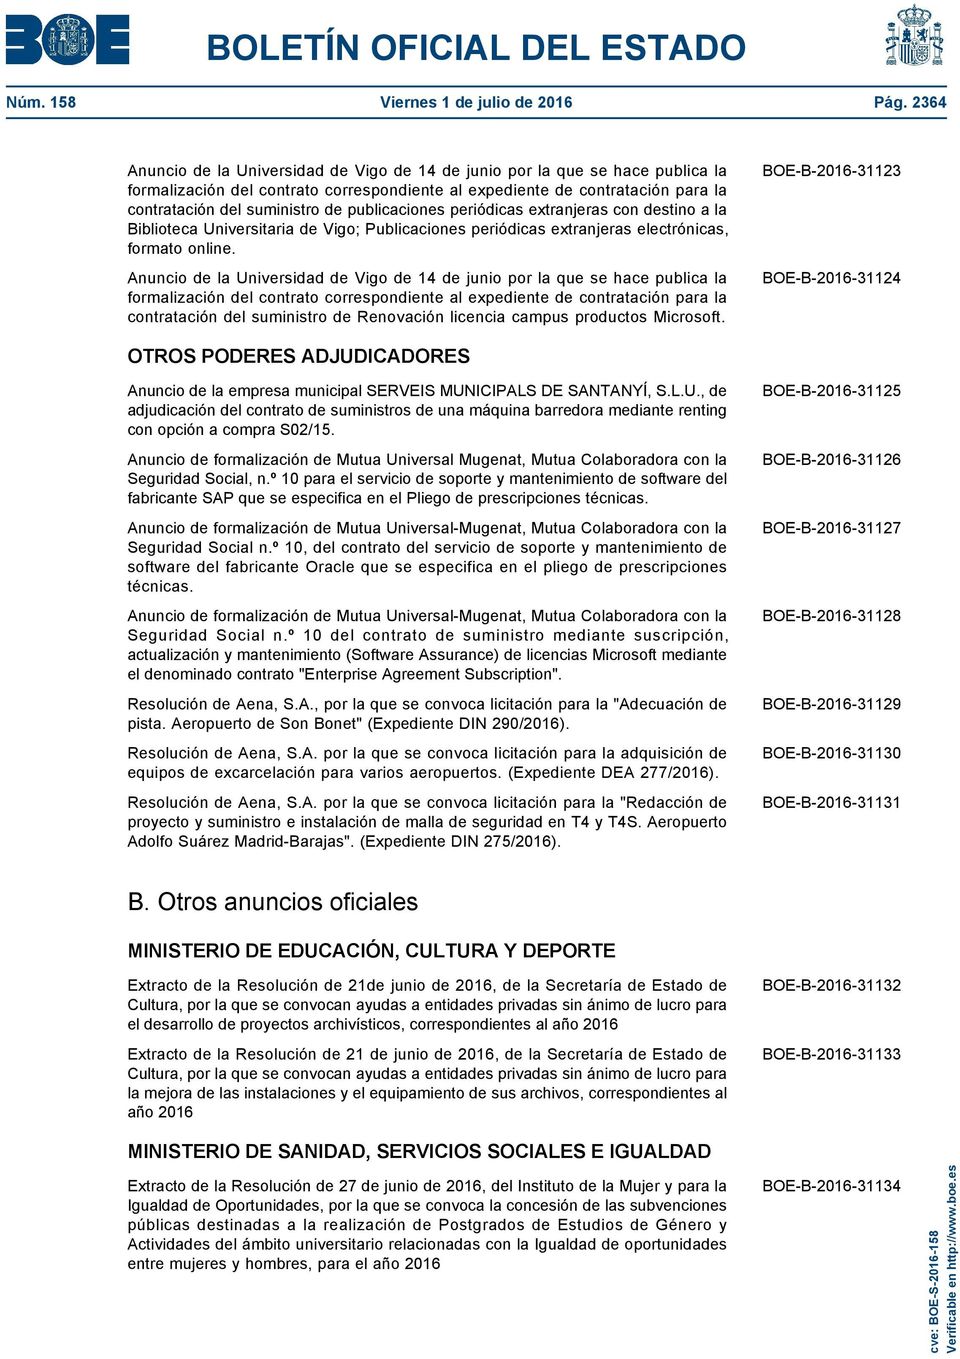 publicaciones periódicas extranjeras con destino a la Biblioteca Universitaria de Vigo; Publicaciones periódicas extranjeras electrónicas, formato online.